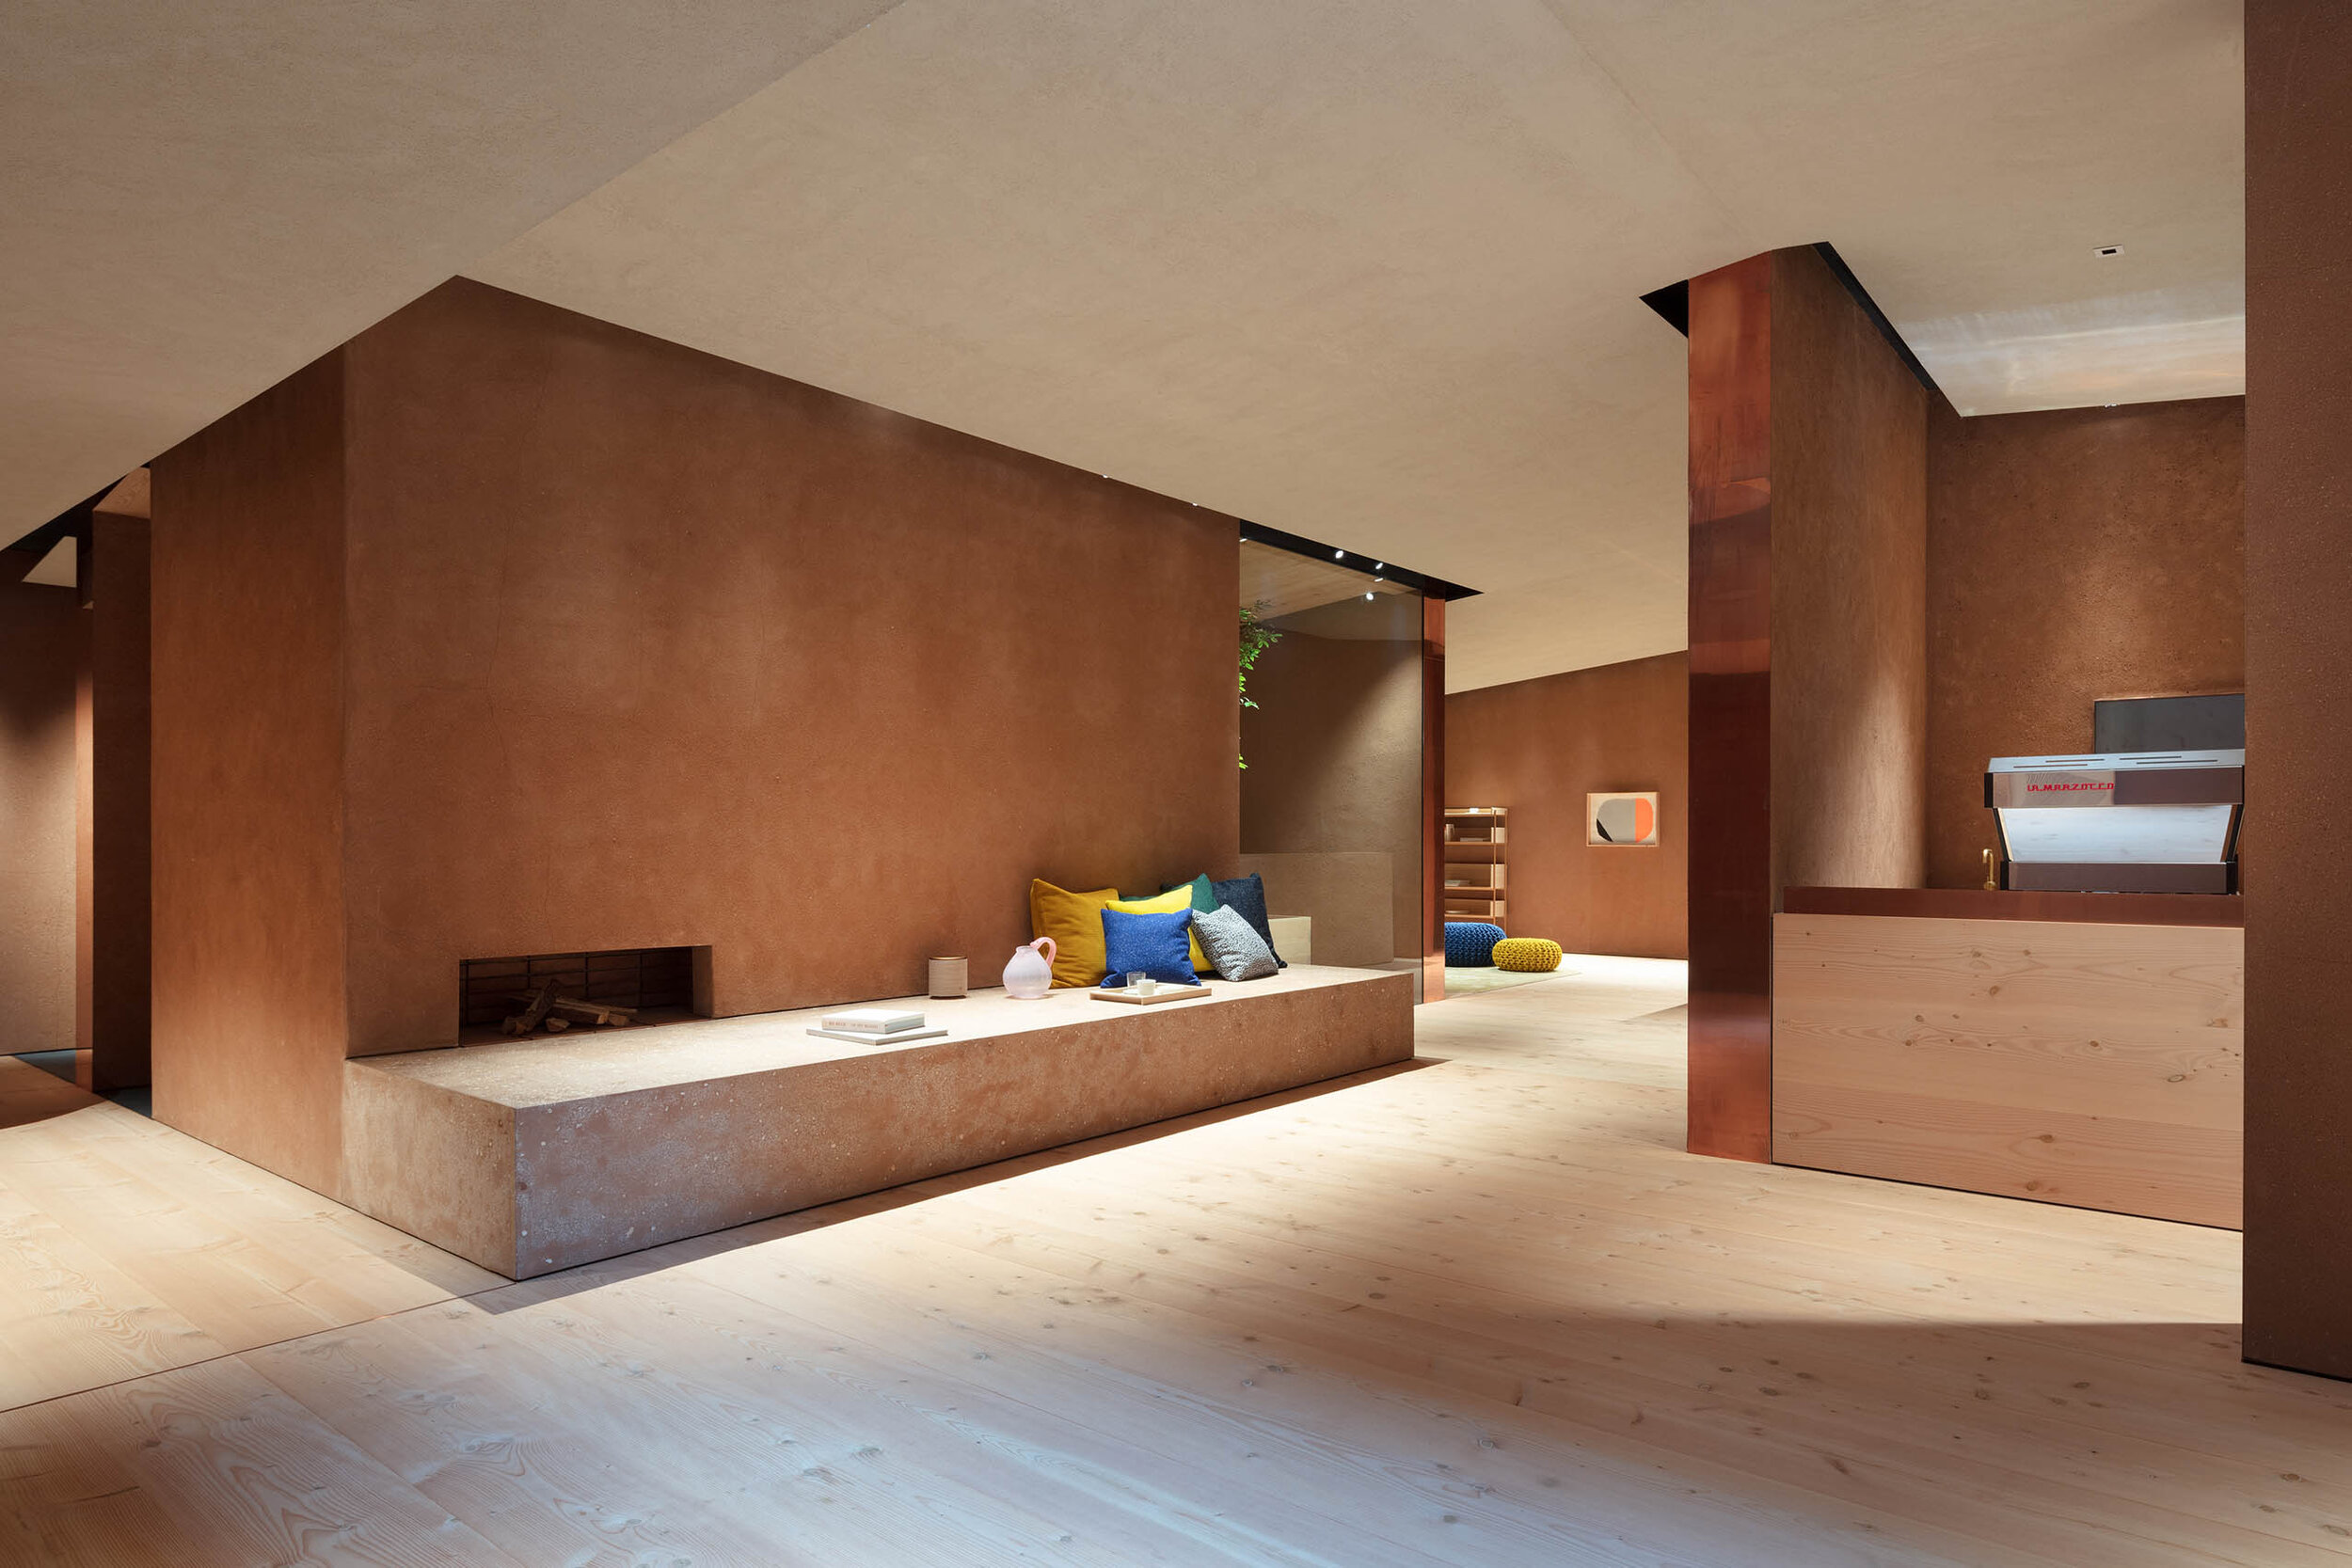  Teruhiro Yanagihara Studio has designed warm atmosphere for 1616/arita japan showroom in Arita, Japan. 